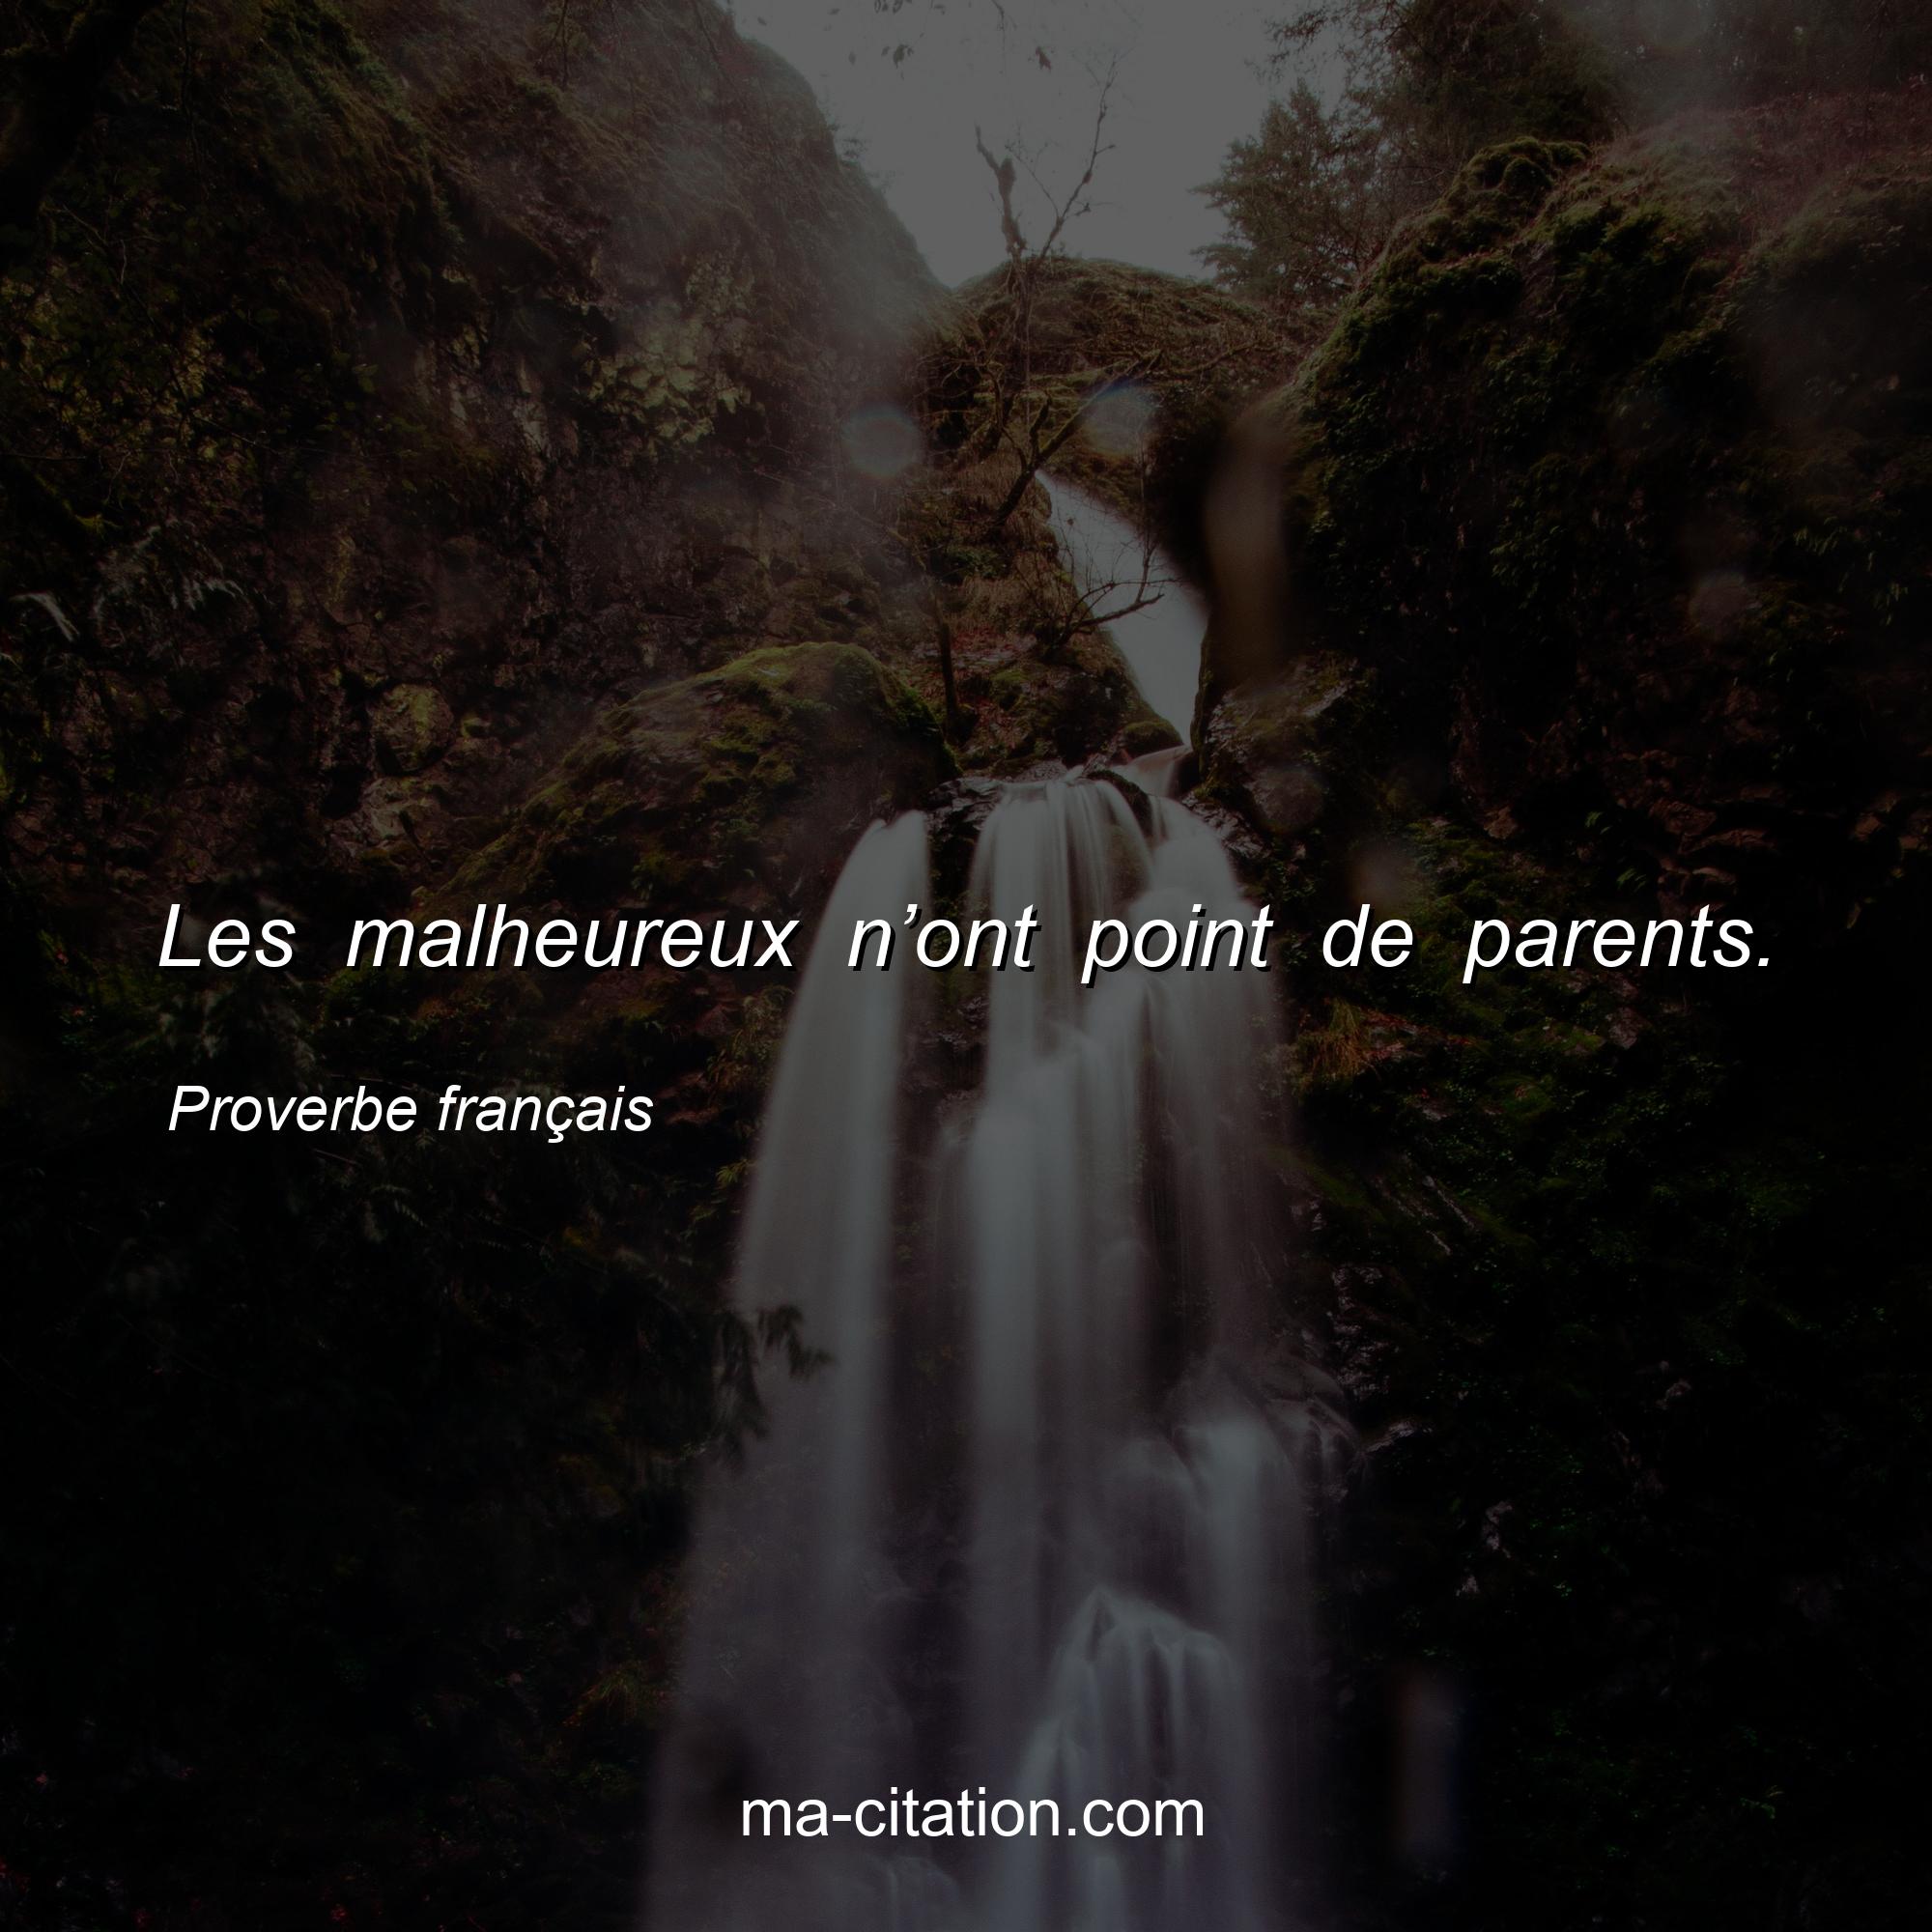 Proverbe français : Les malheureux n’ont point de parents.